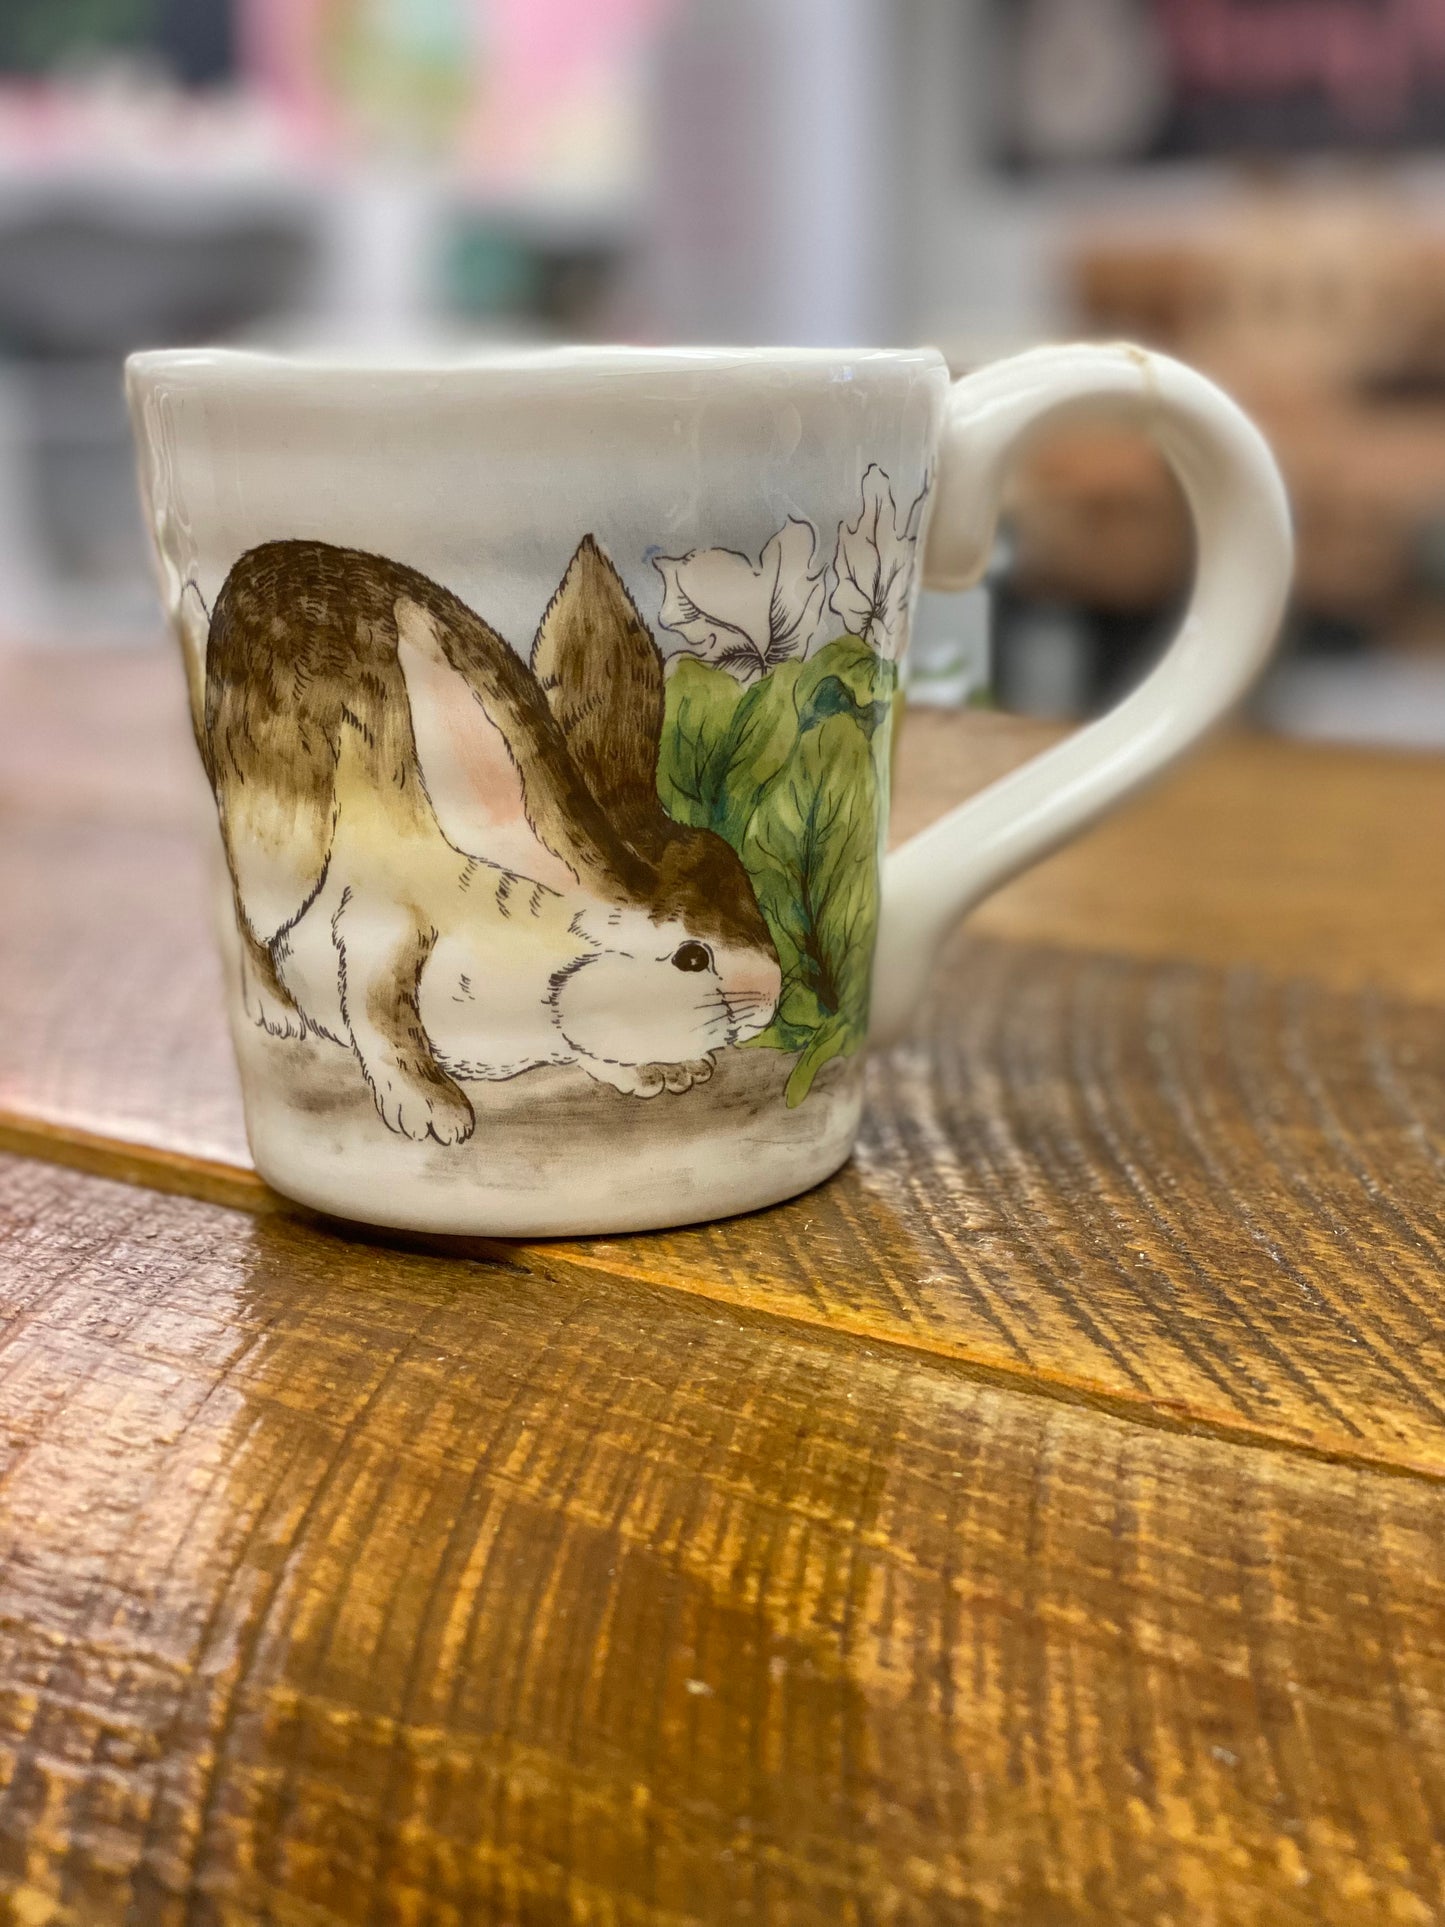 Peter Rabbit Mug